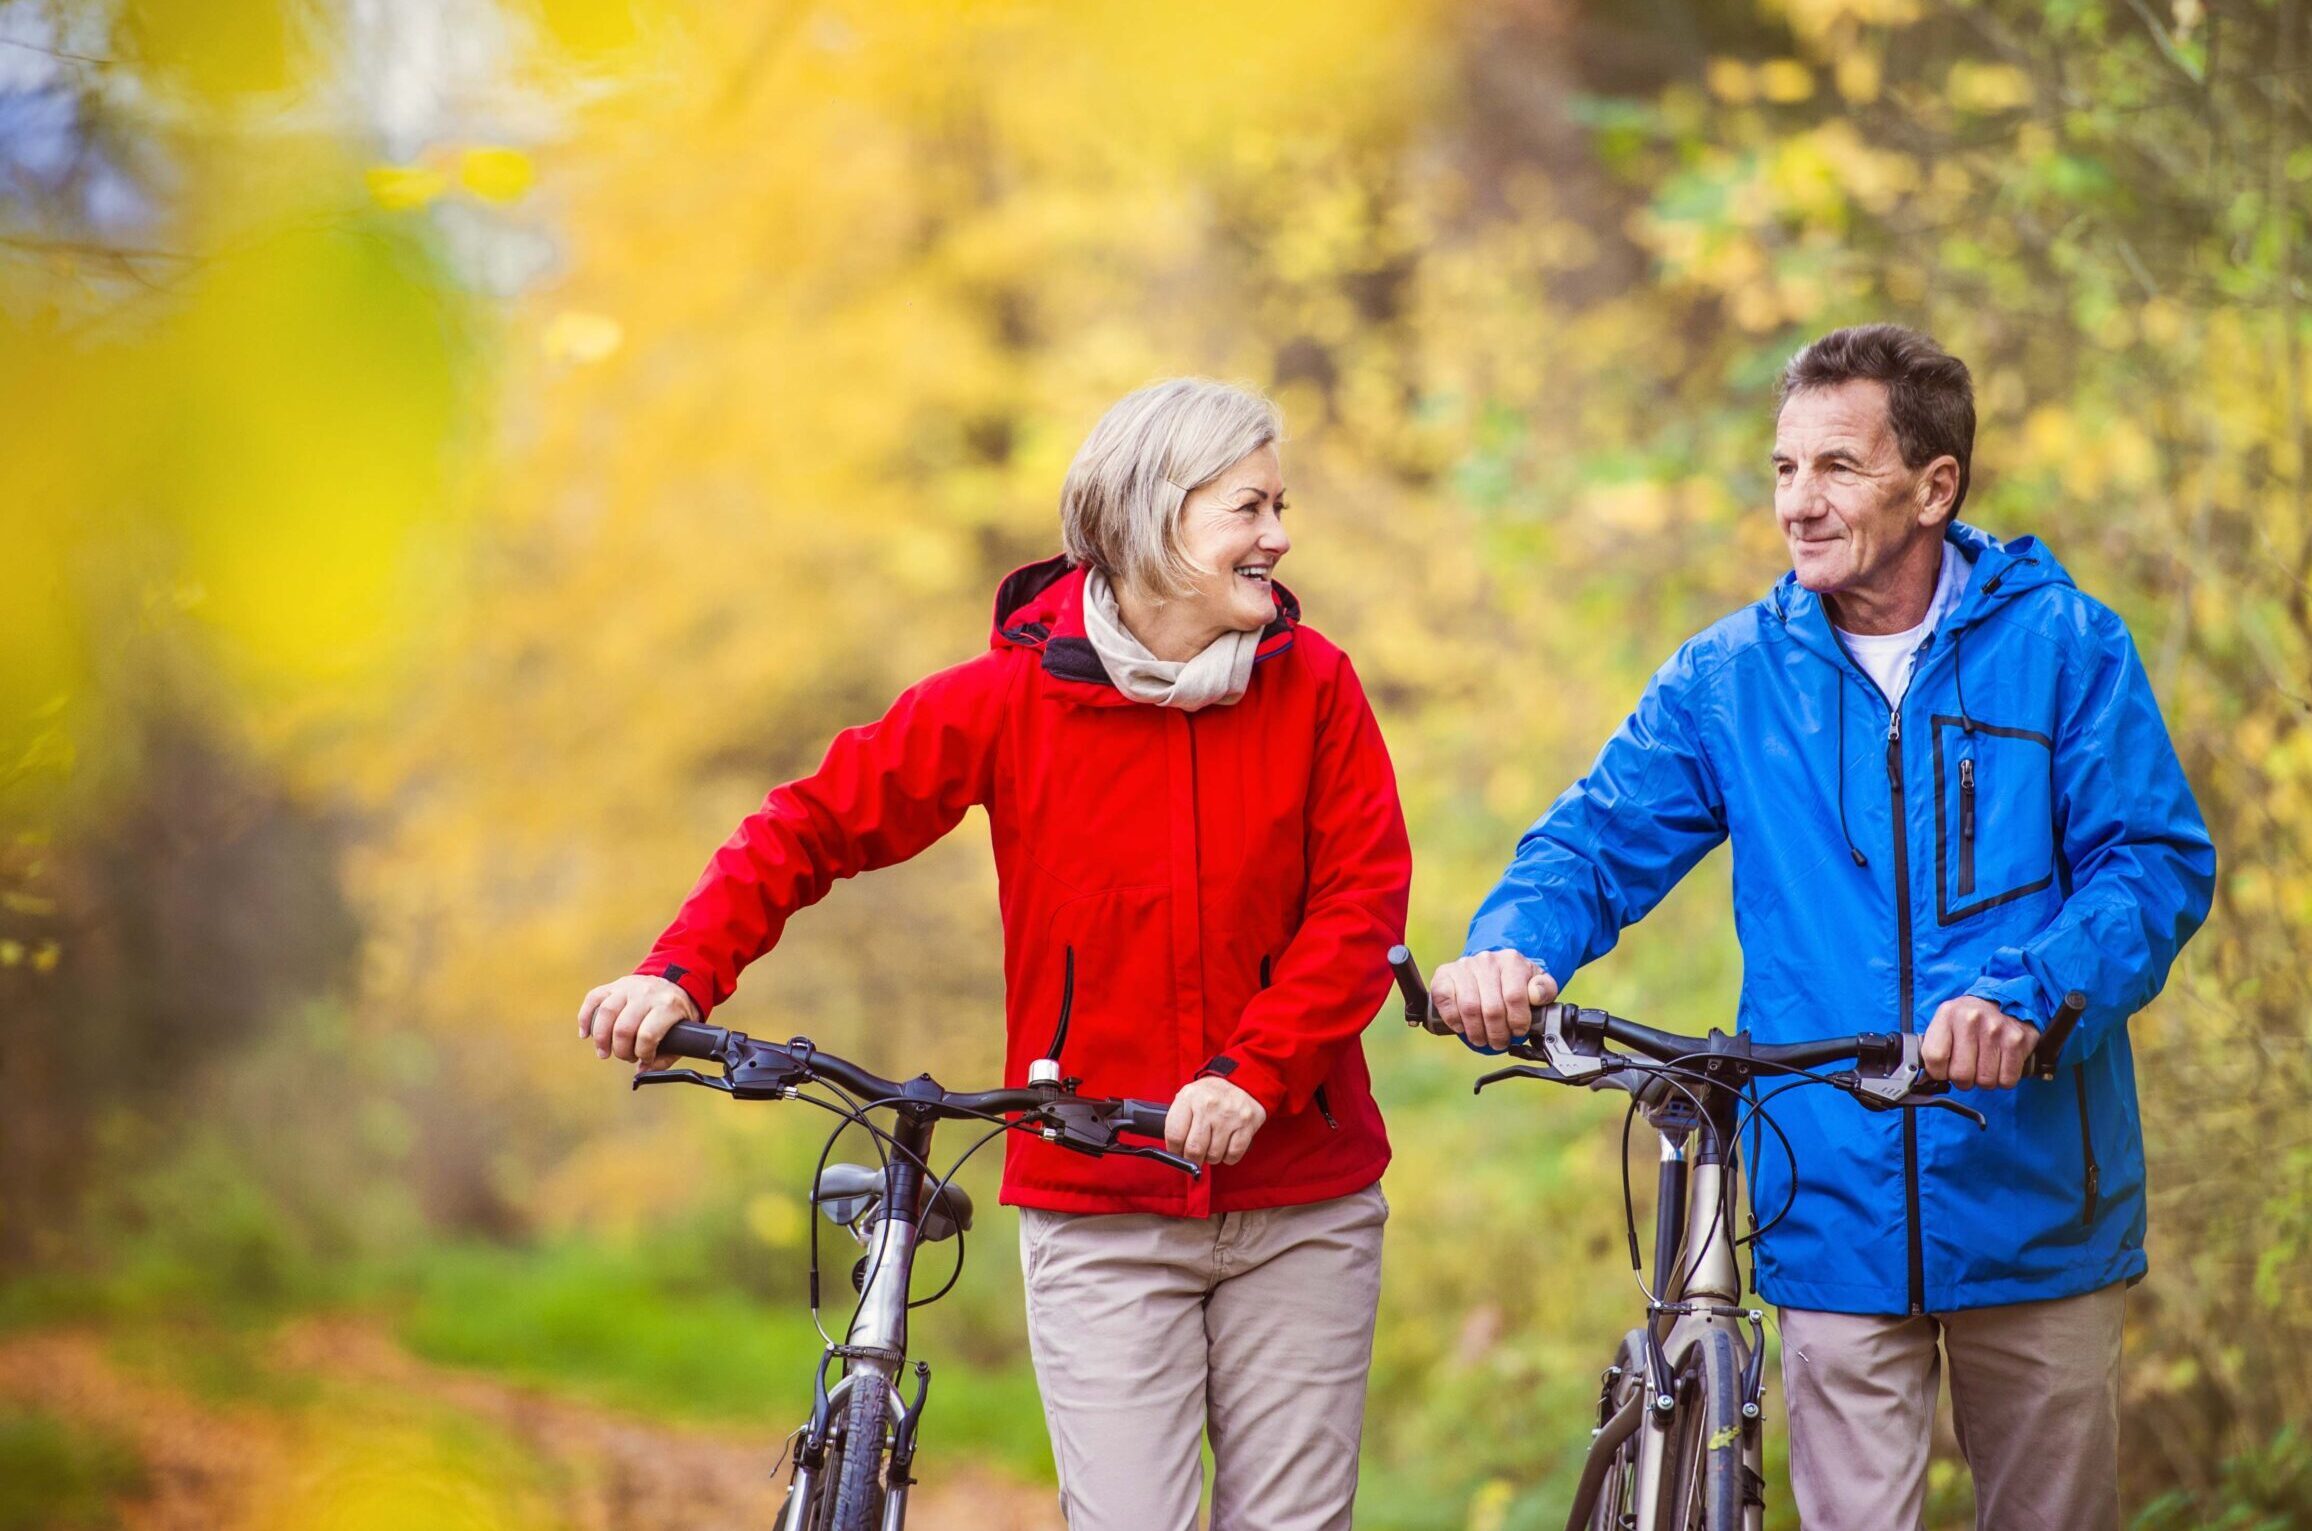 A senior couple walks with bikes through fall foliage.